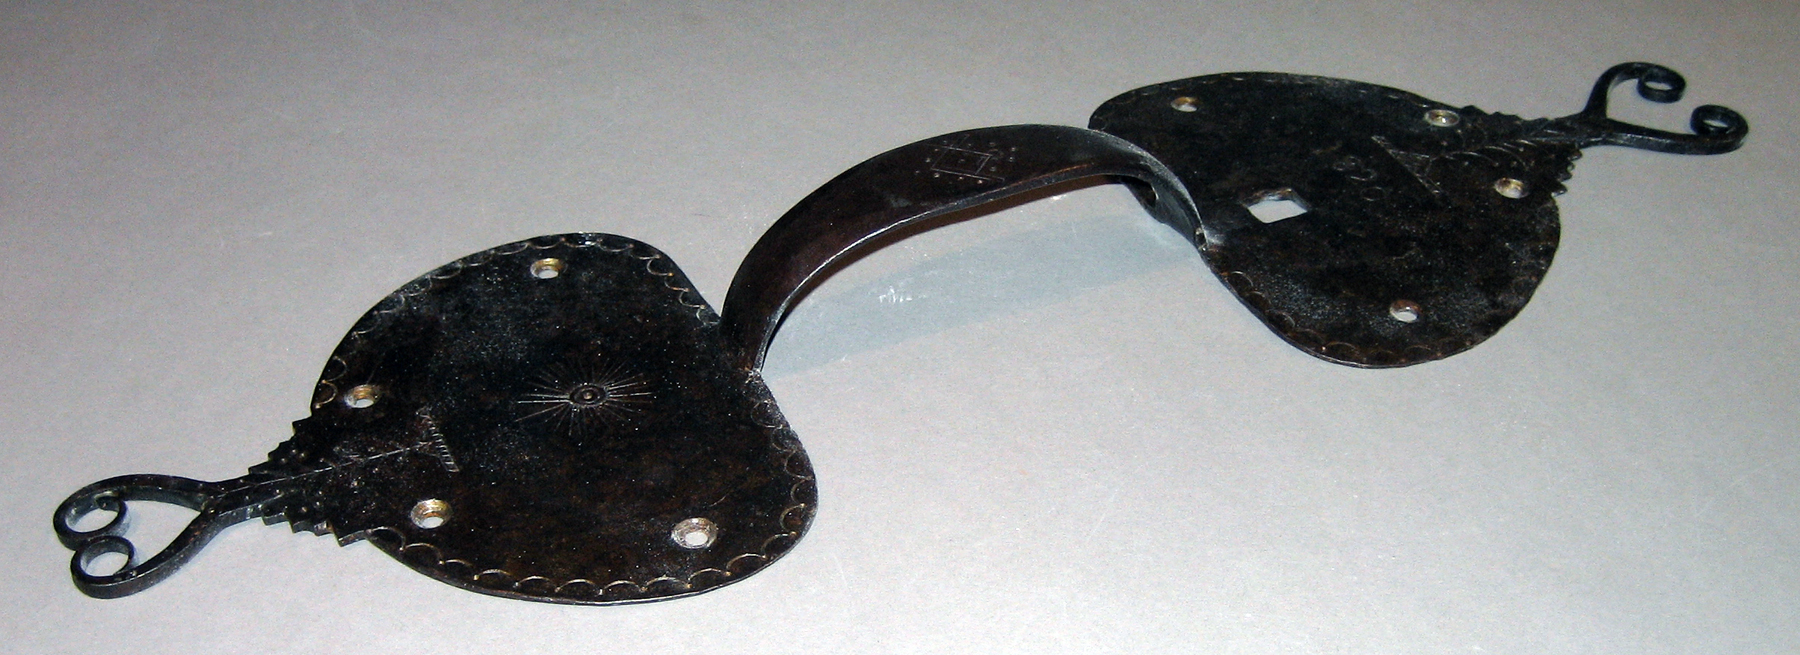 Metals - Door handle